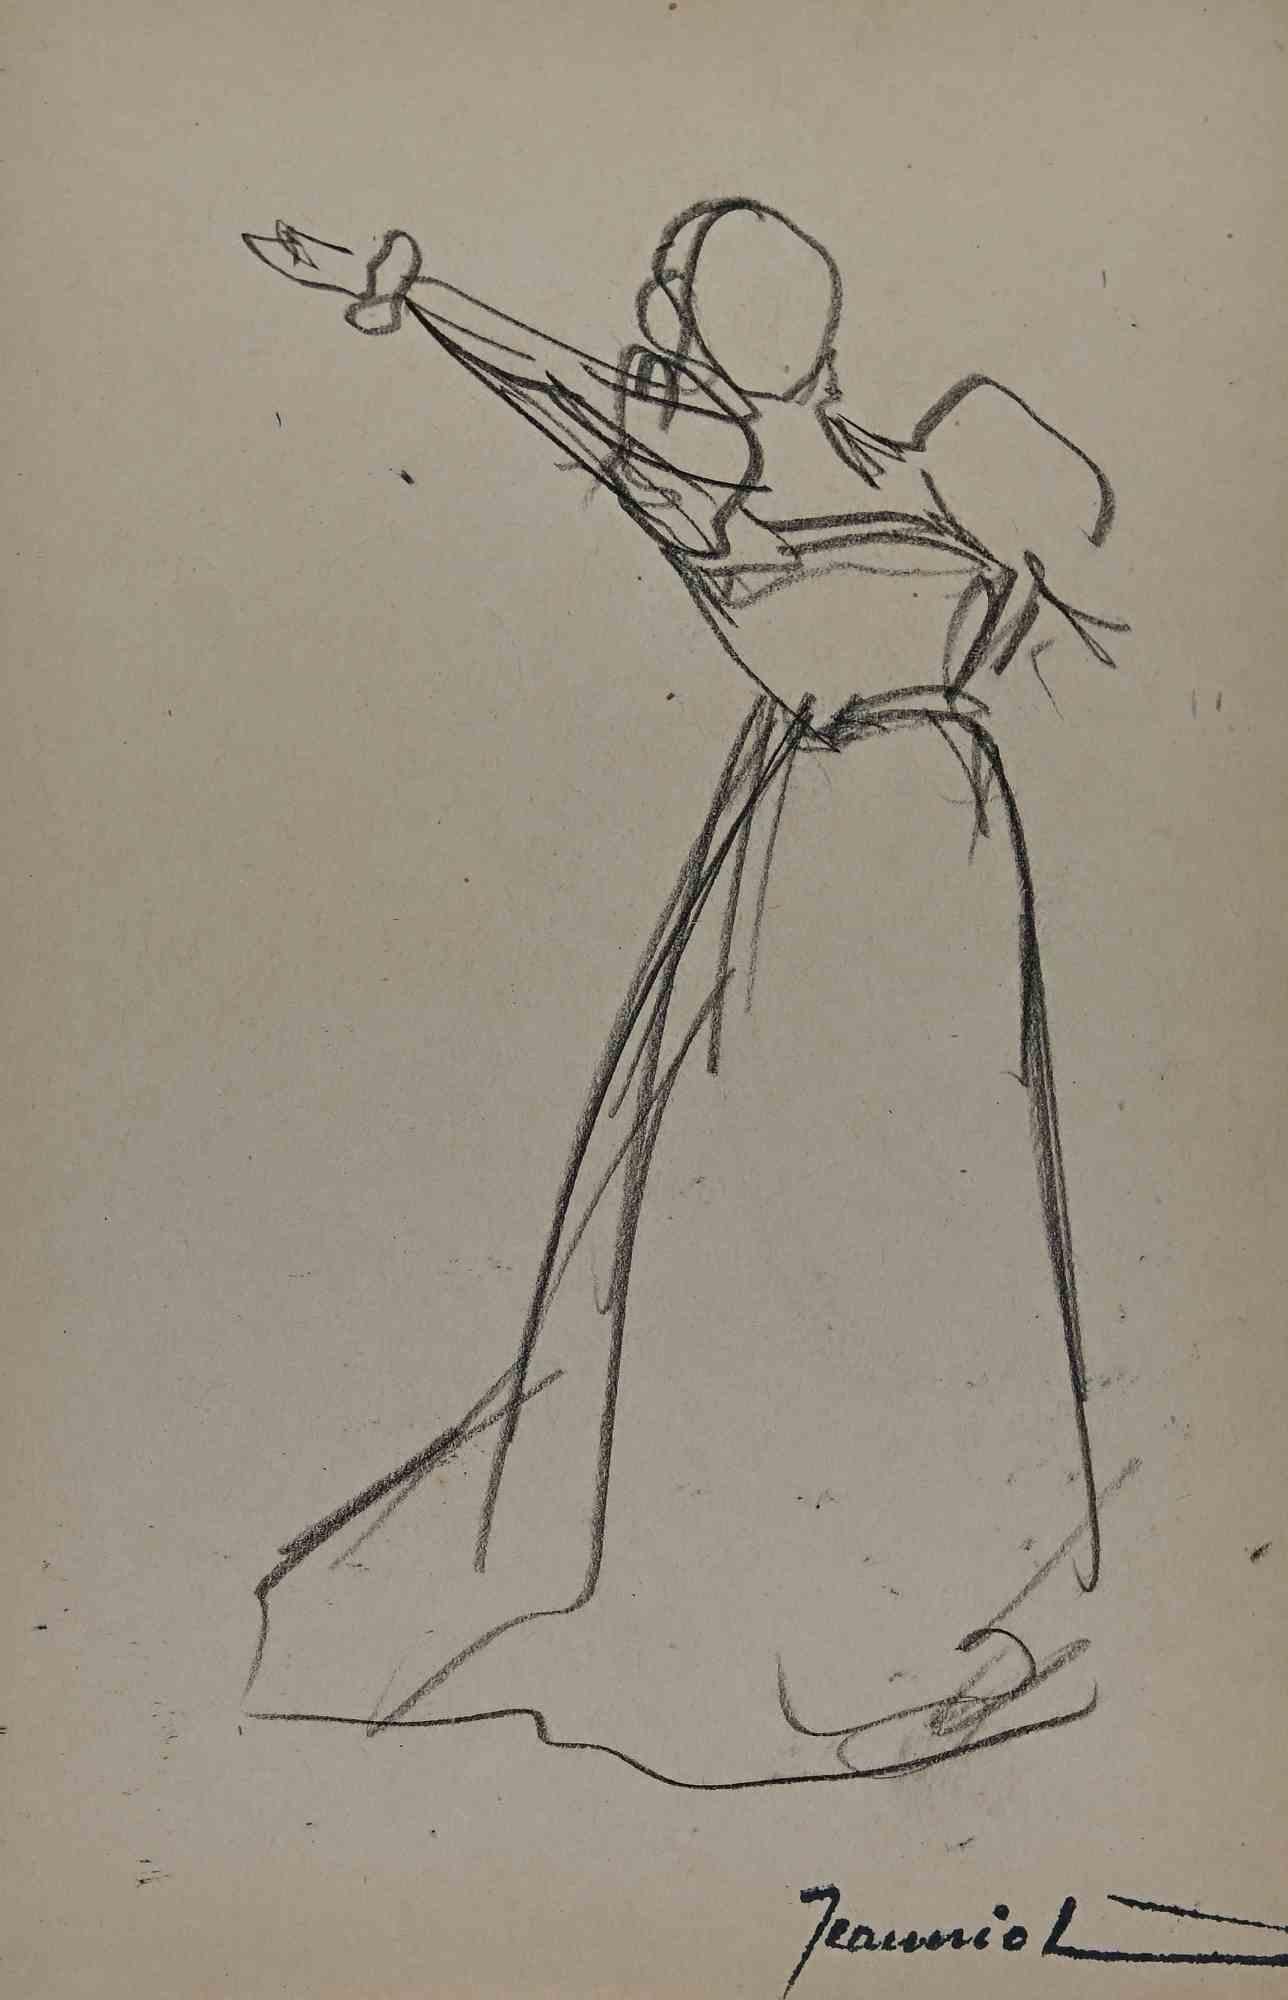 Frau ist eine Original-Zeichnung auf Papier des Malers Pierre Georges Jeanniot (1848-1934).

Zeichnen mit Bleistift.

Handsigniert auf der Unterseite.

Guter Zustand mit einigen Stockflecken.

Das Kunstwerk wird durch geschickte und schnelle Striche